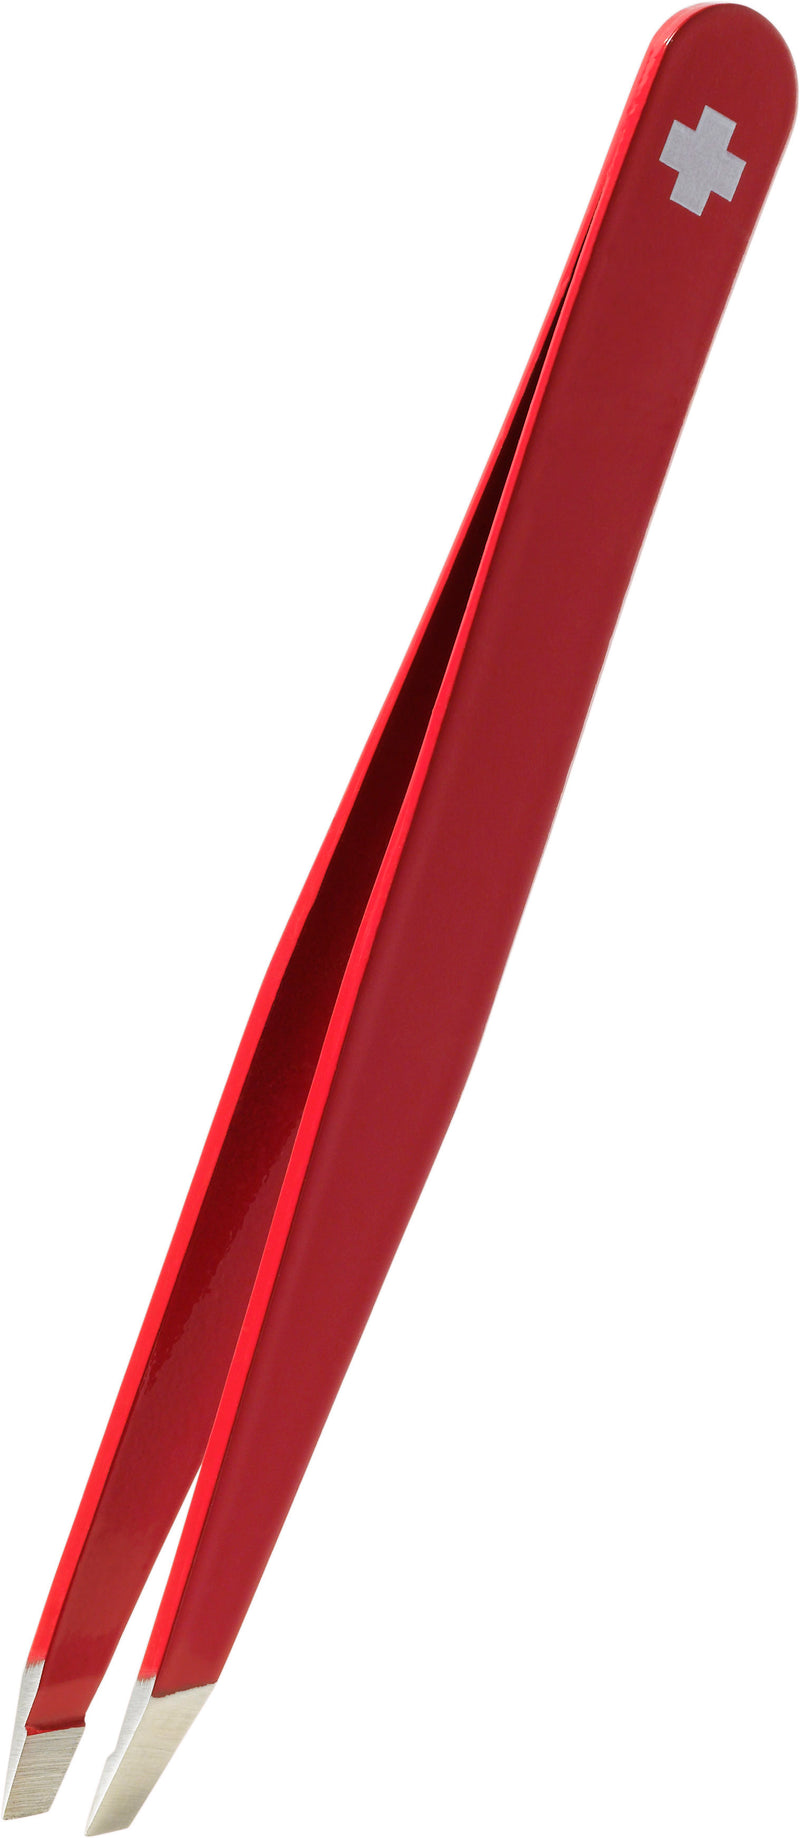 RUBIS Pinzette Schweizerkreuz schräg, rot, Inox